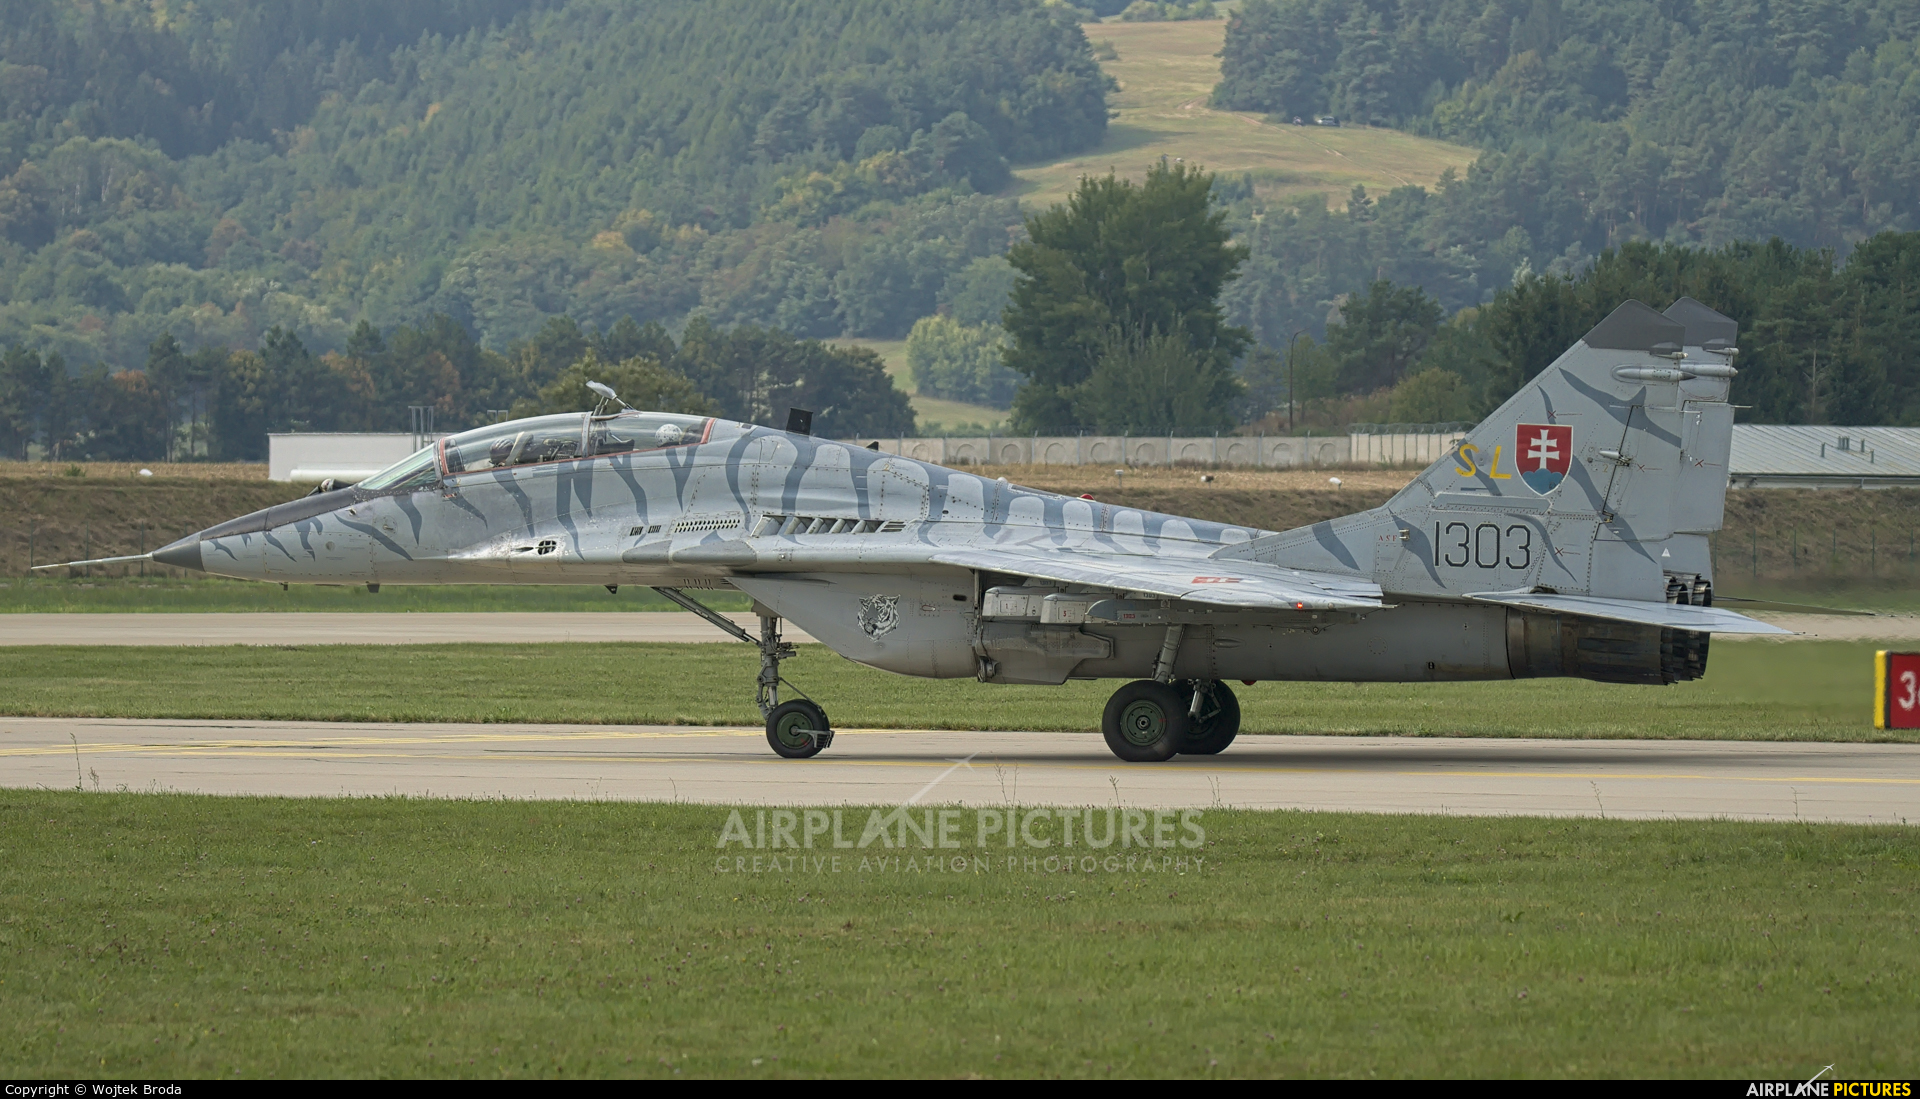 Slovakia -  Air Force 1303 aircraft at Sliač